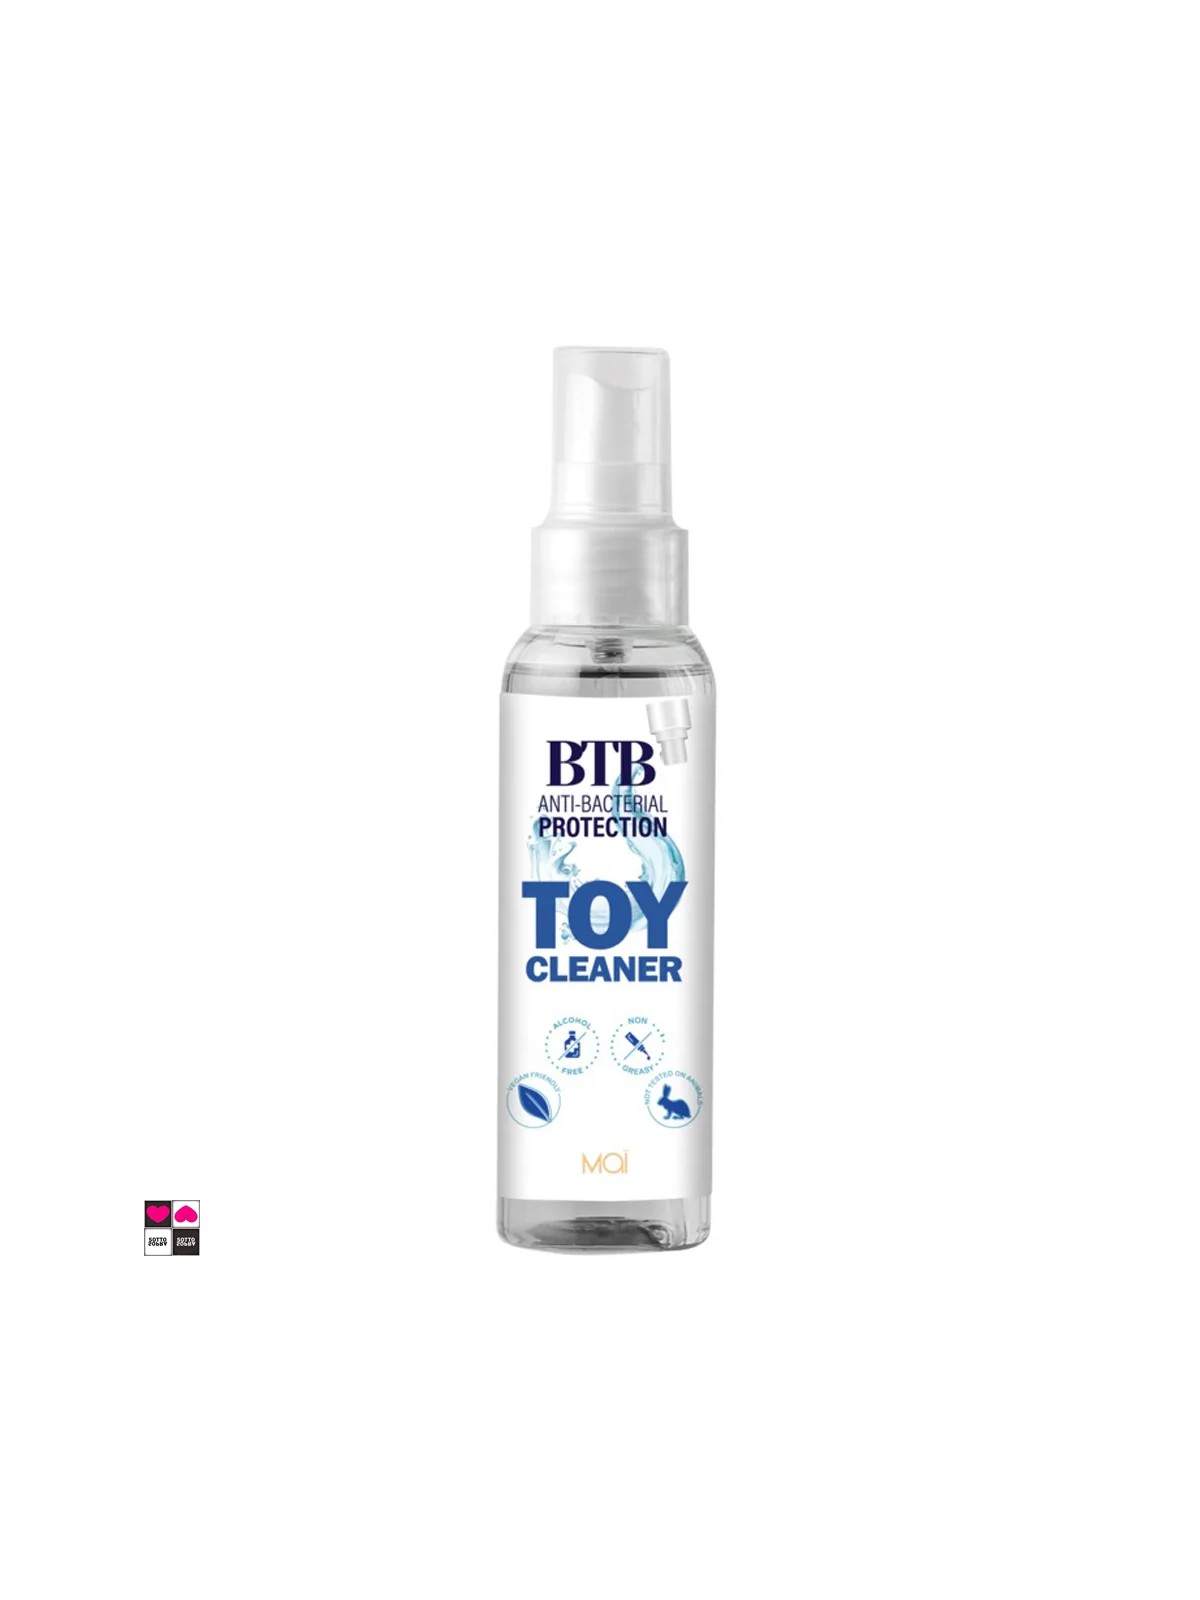 Toy Cleaner: La Tua Scelta per un Giocattolo Pulito e Igiene Sicura